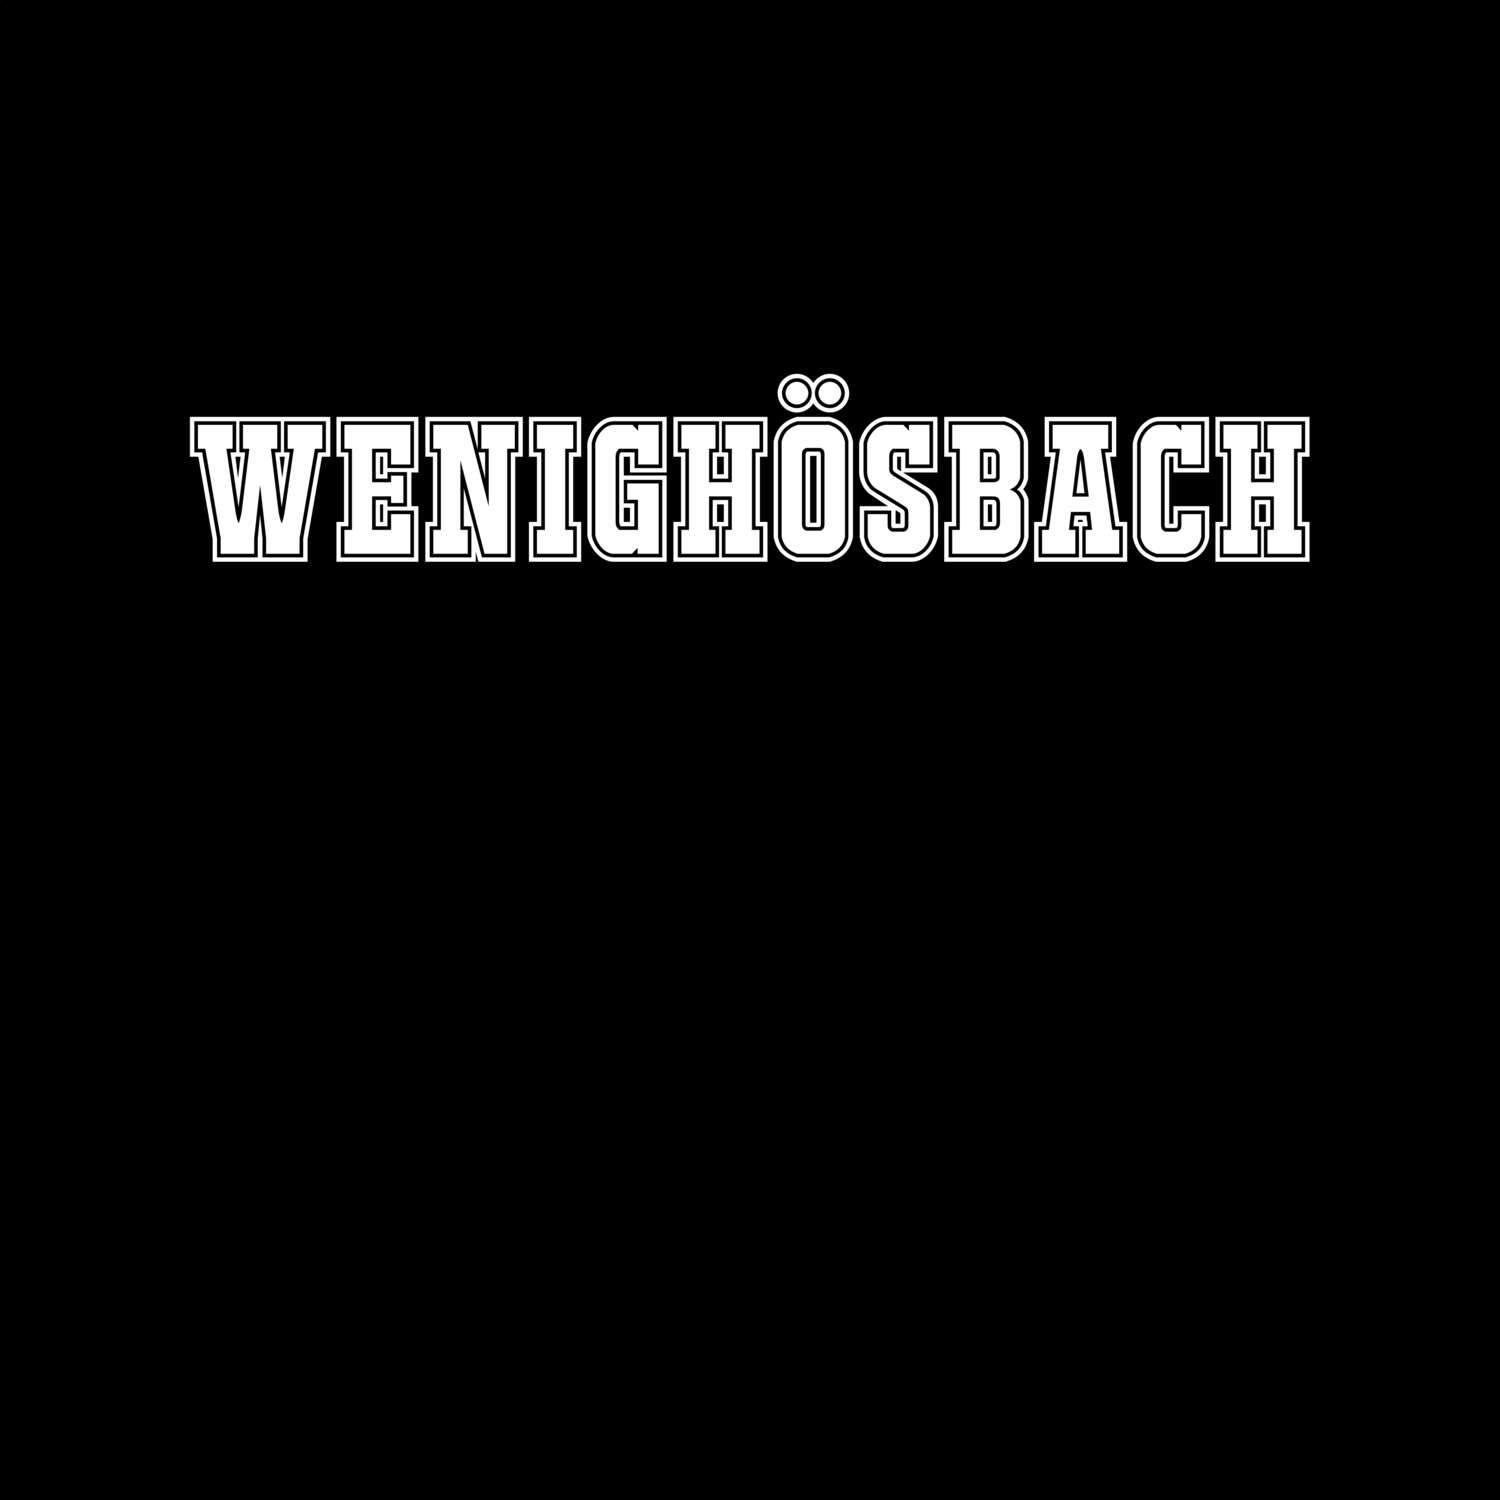 Wenighösbach T-Shirt »Classic«